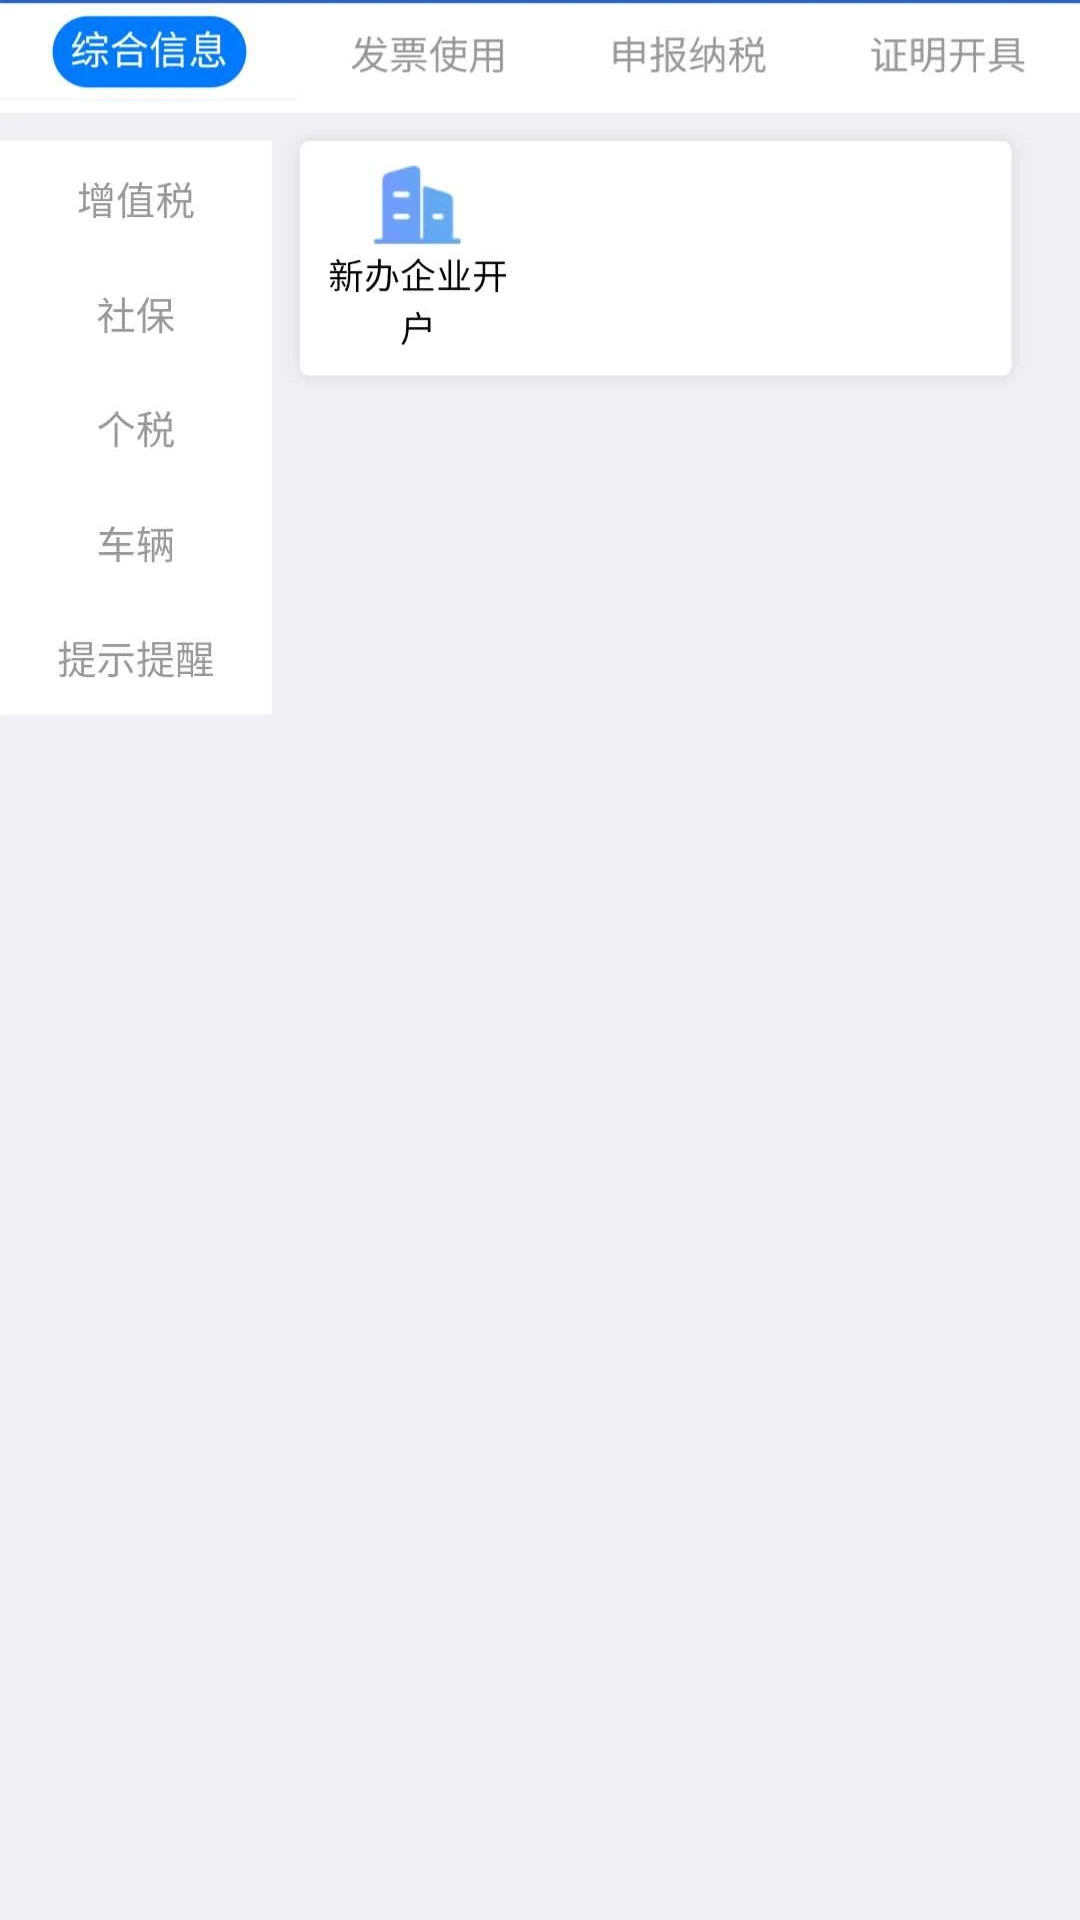 江苏国税电子税务局手机版